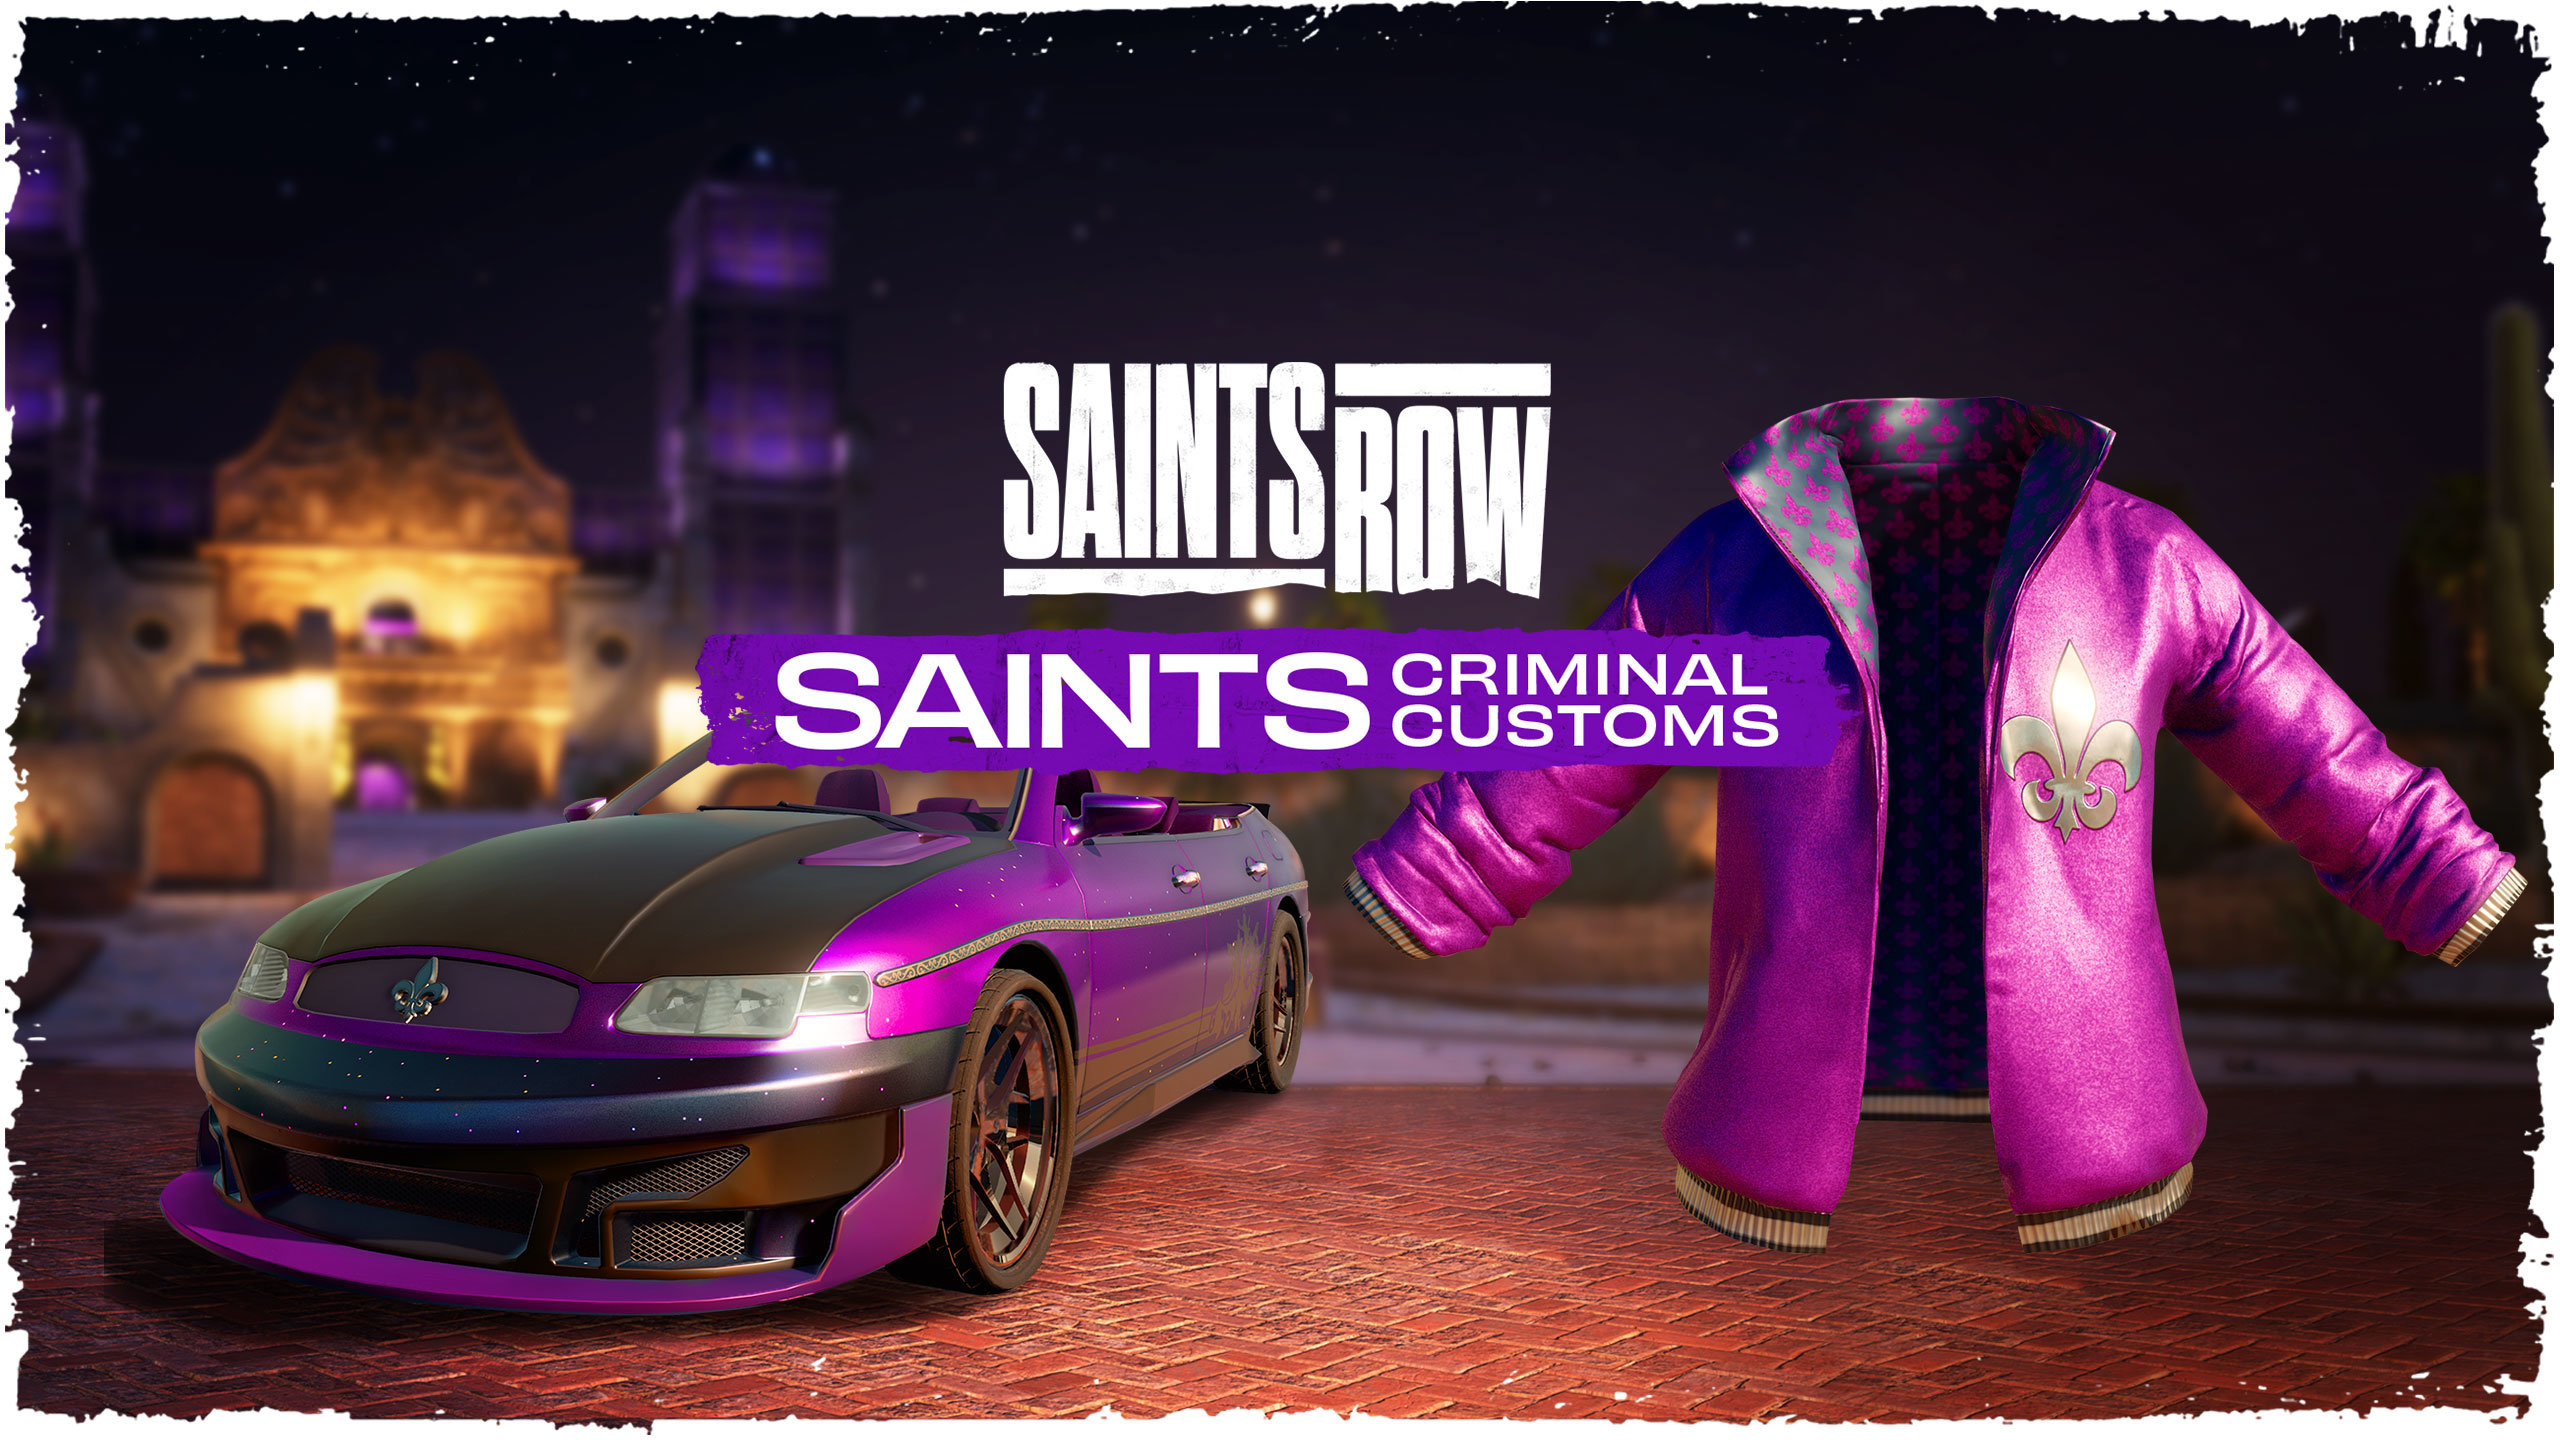 Saints Row Saints Criminal Customs Edition Epic Games CD Key, $68.2